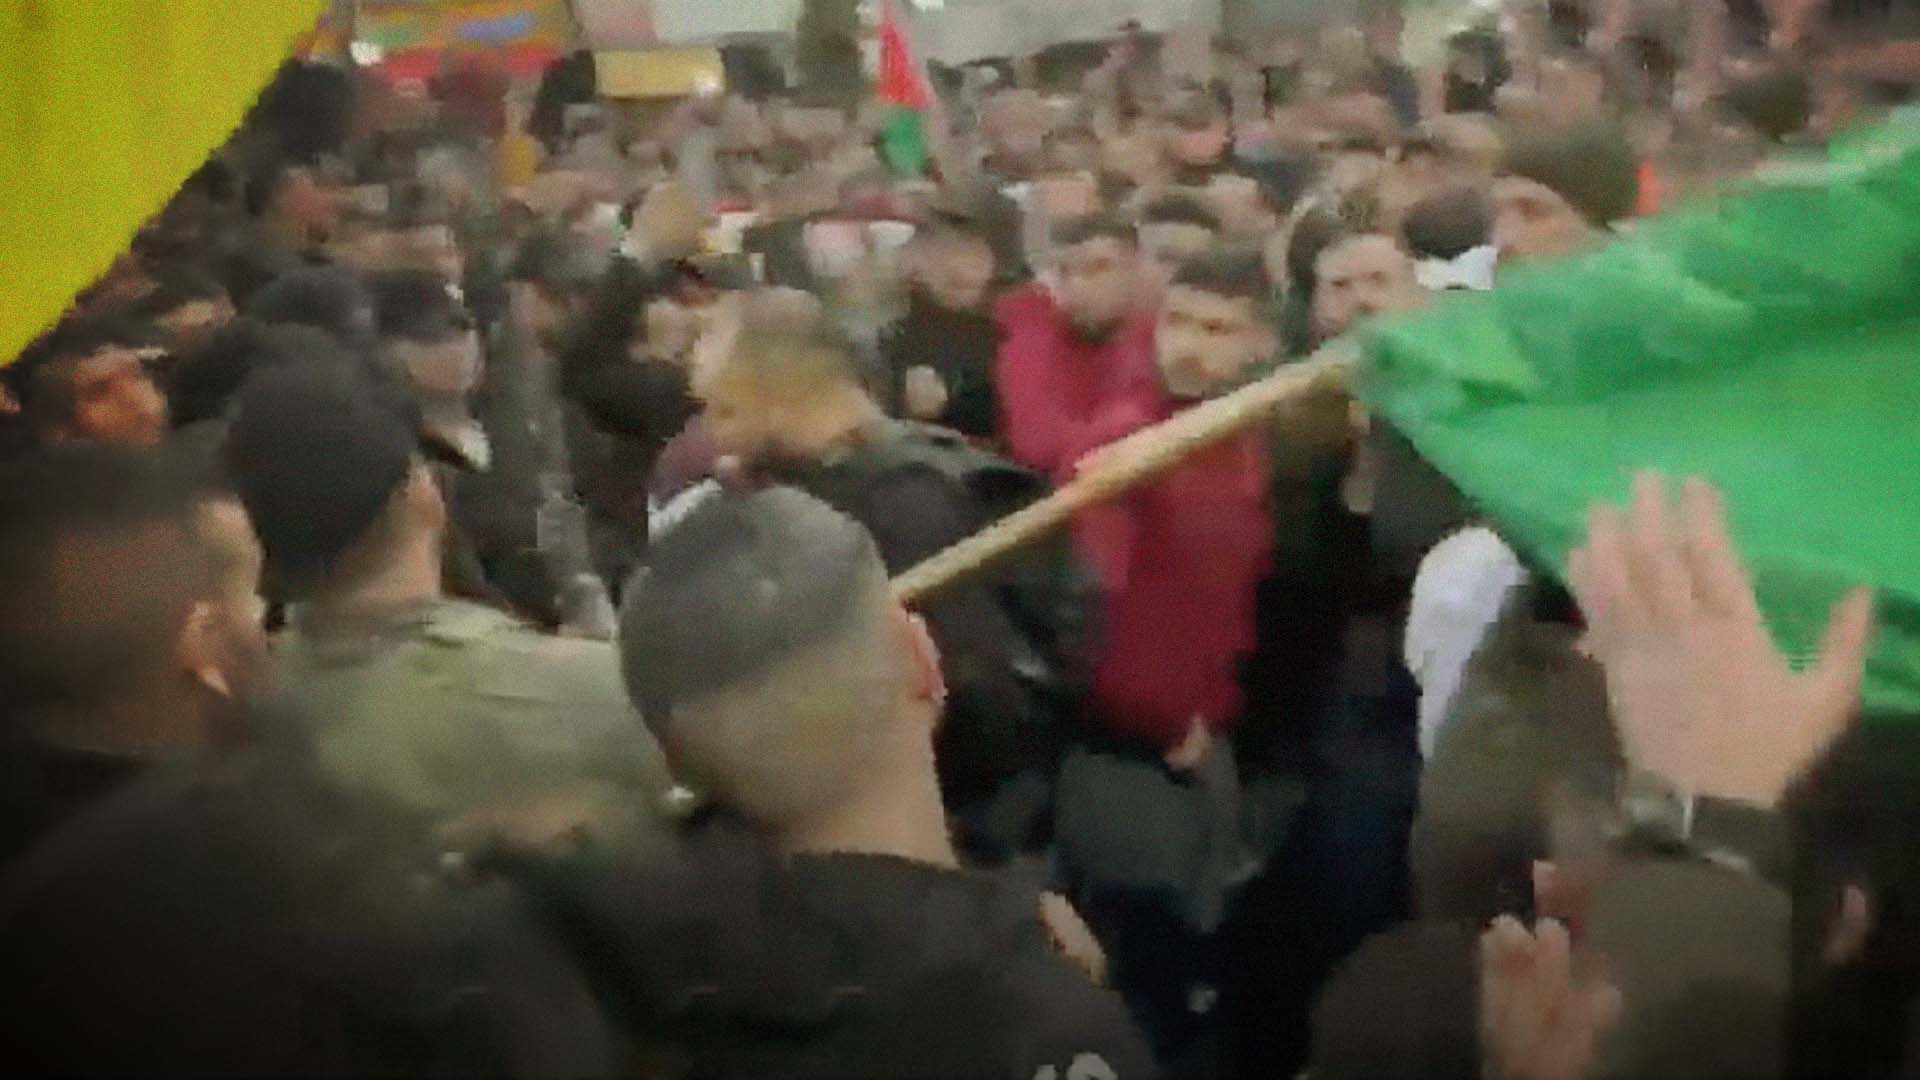 صورة السلطة الفلسطينية ترد بسرعة وقوة على اغتيال شباب فتح وتزيل أعلام حماس من جنازتهم